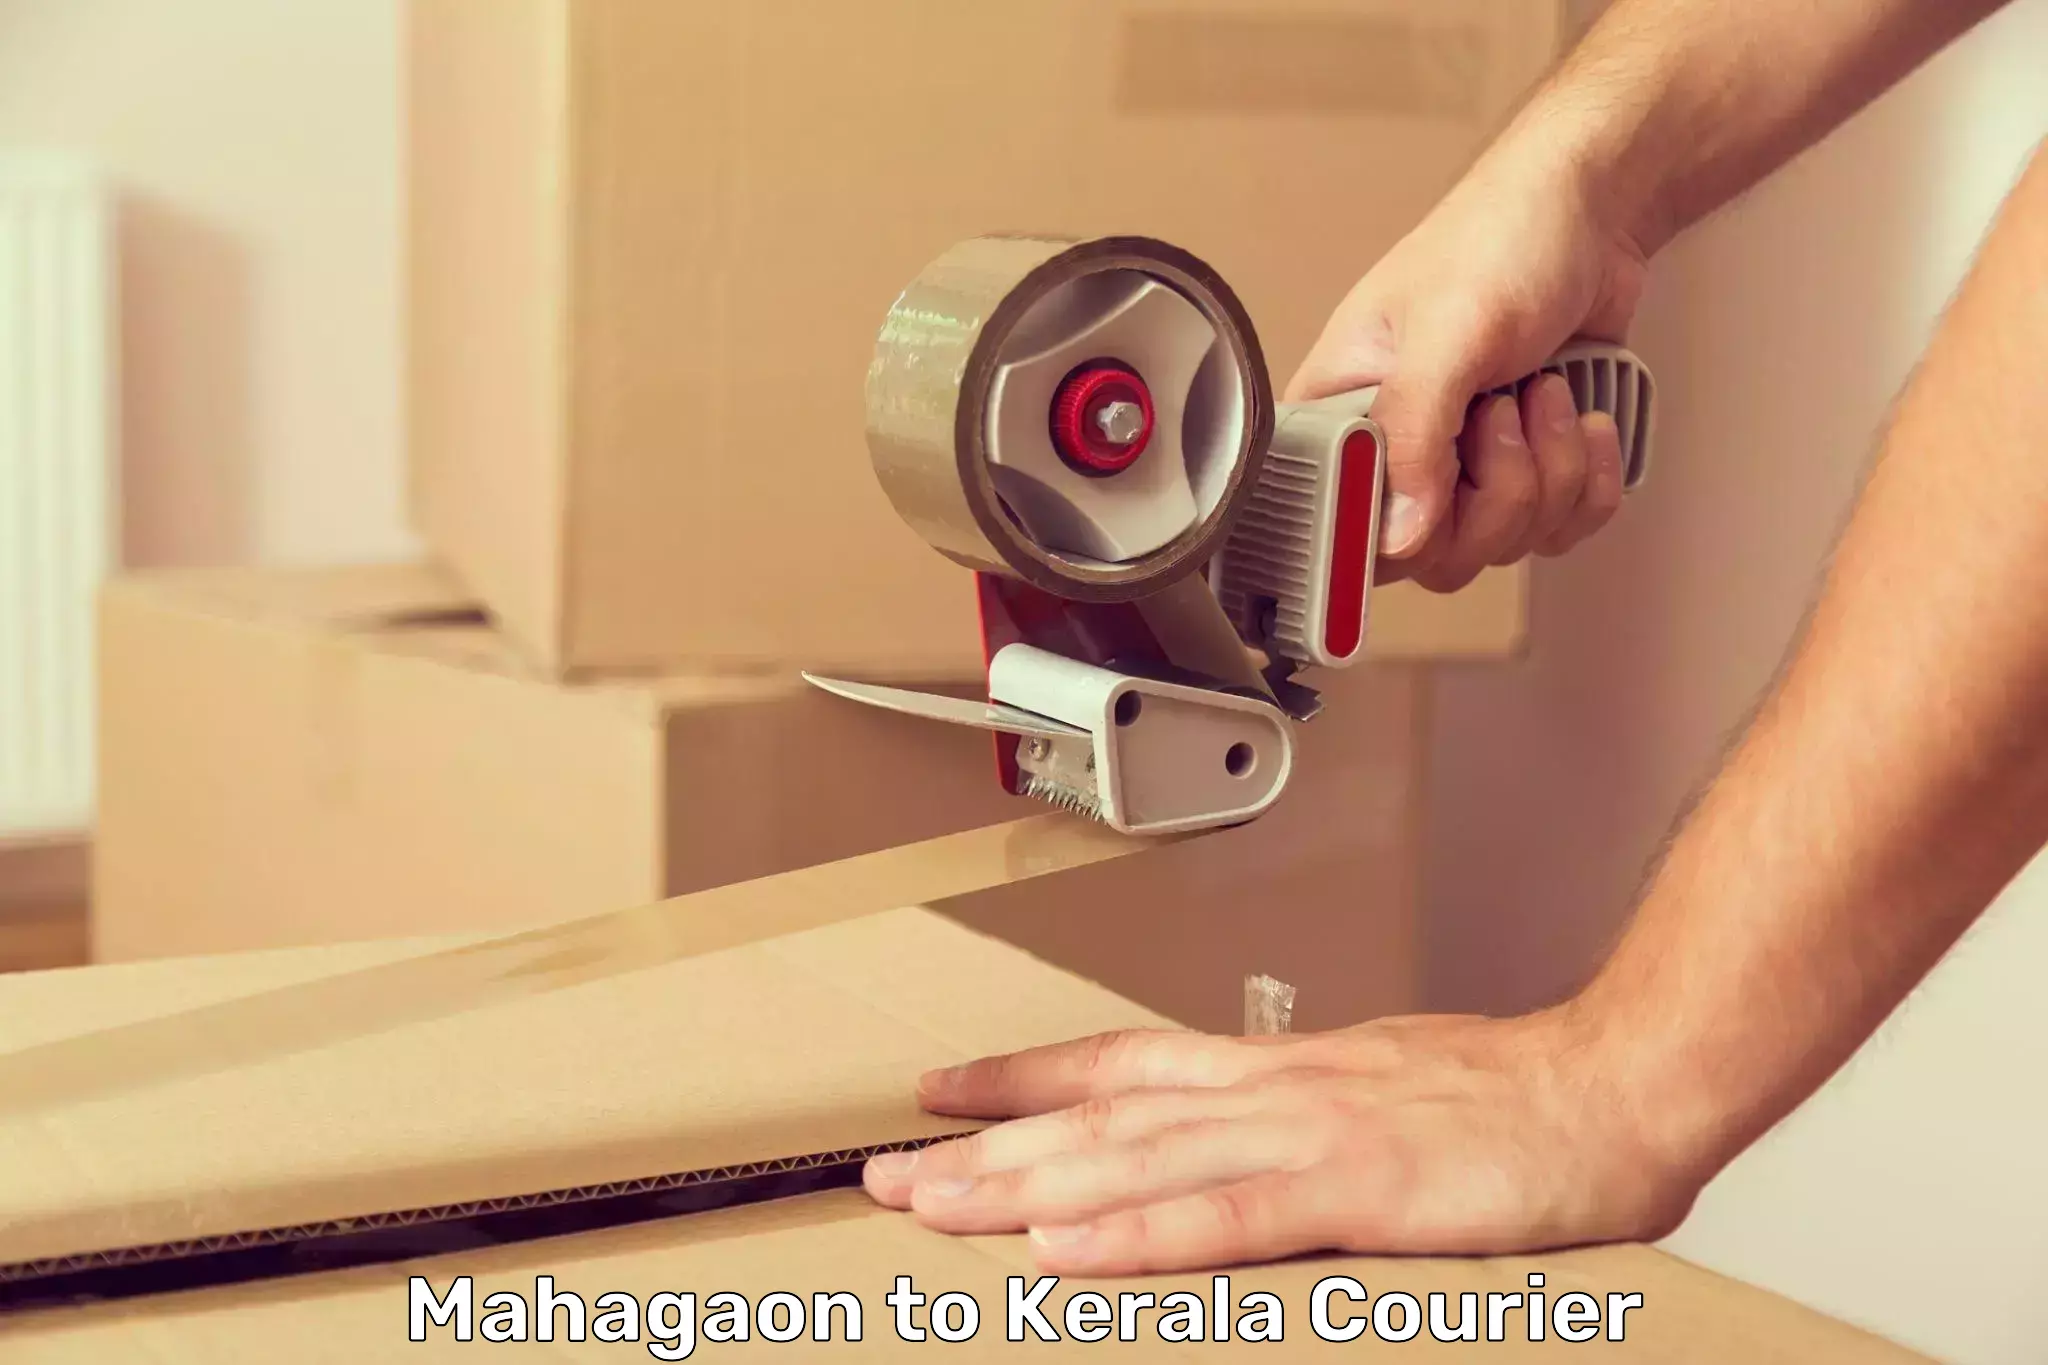 State-of-the-art courier technology Mahagaon to Thiruvananthapuram